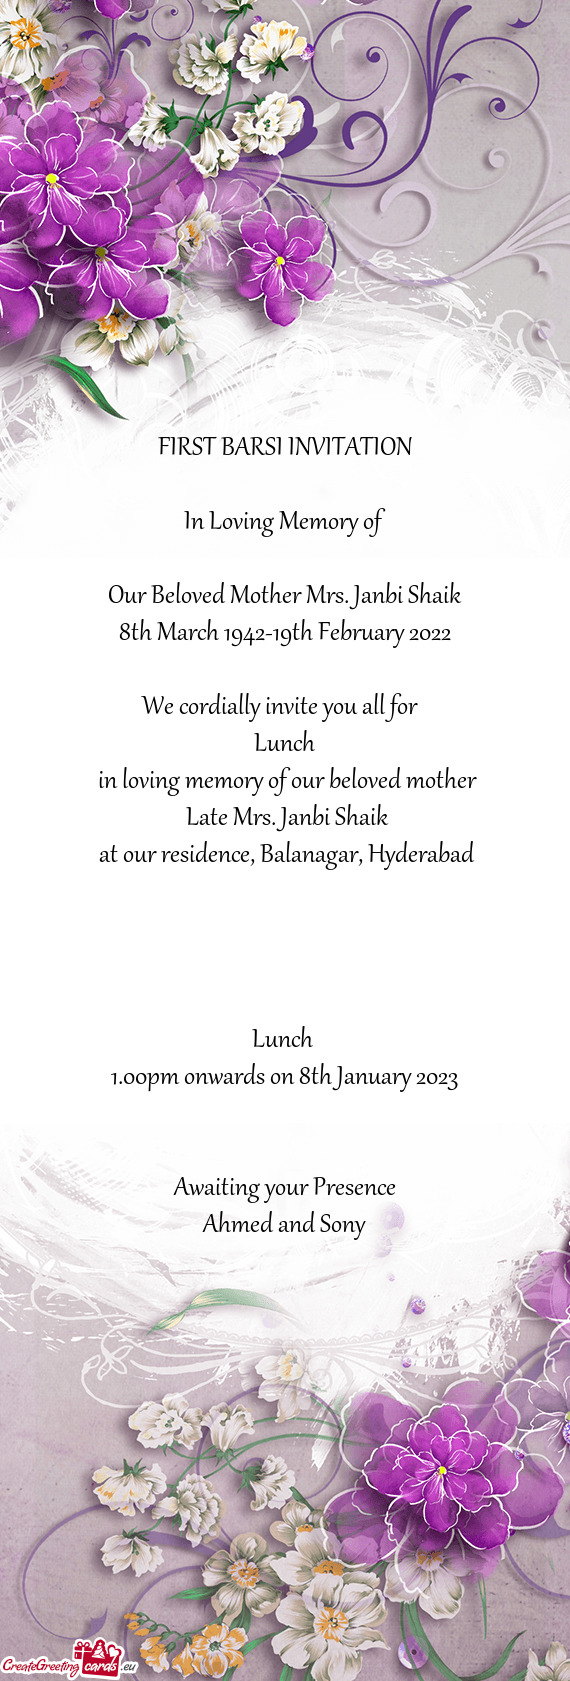 Our Beloved Mother Mrs. Janbi Shaik